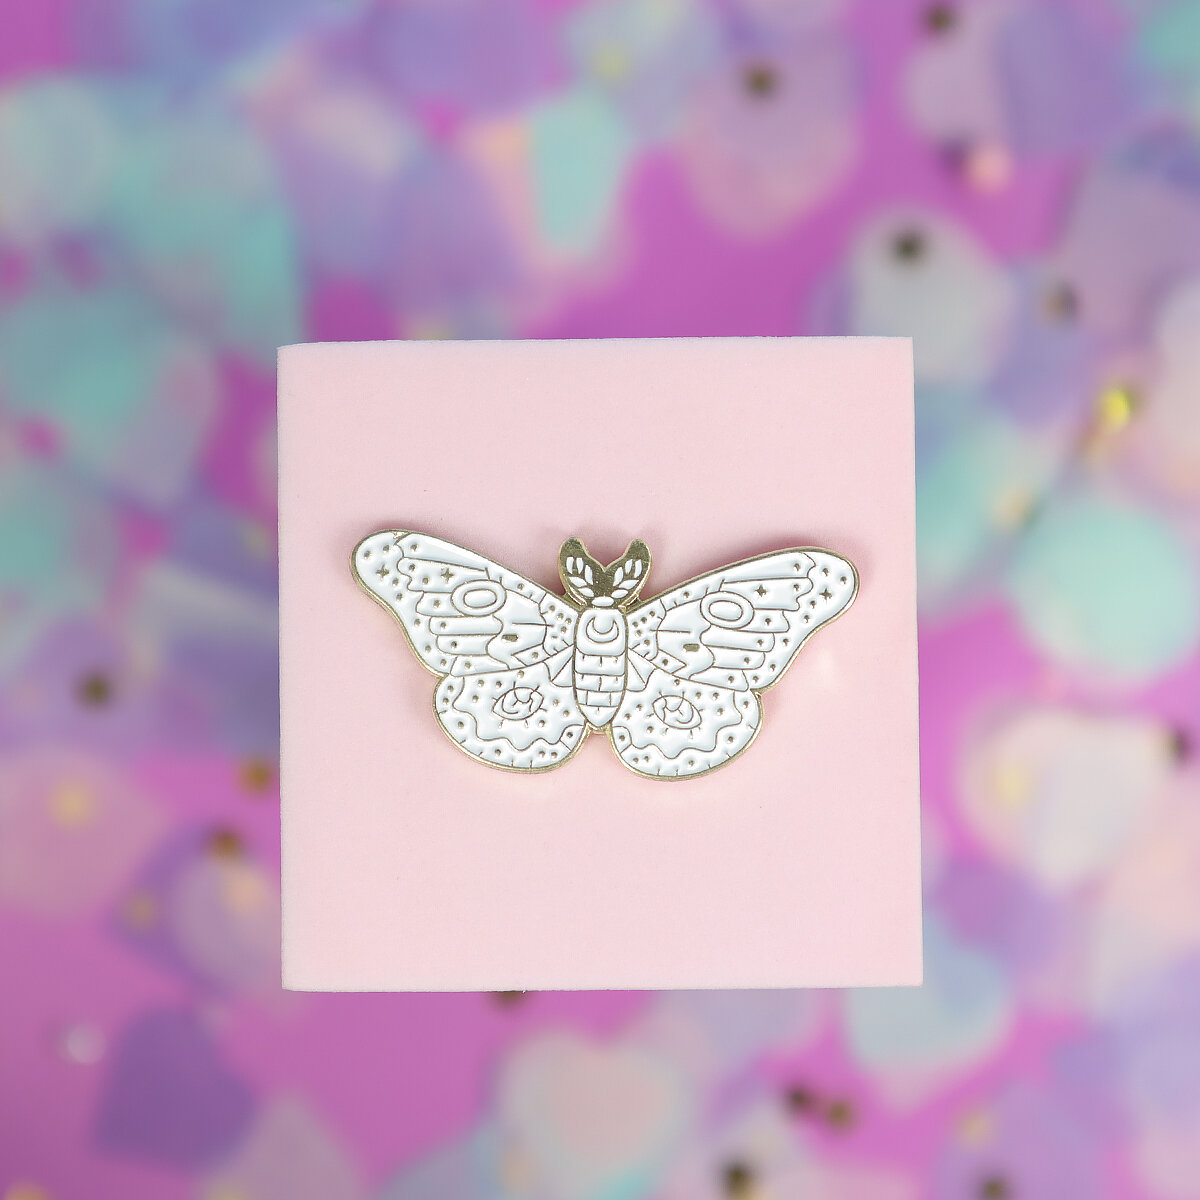 Pin - White moth